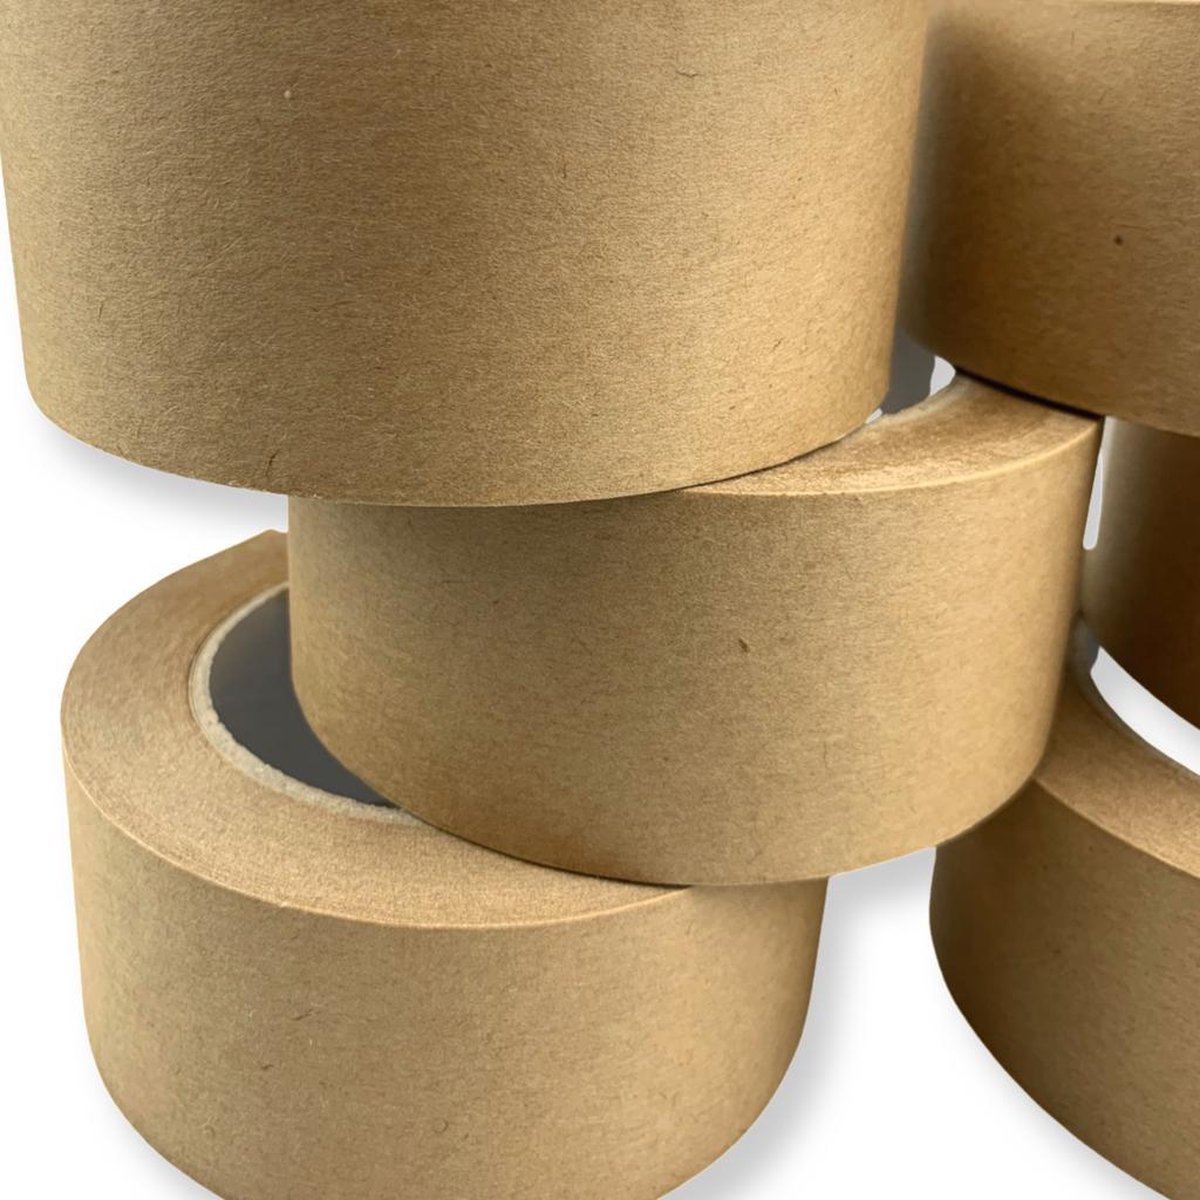 6 stuks - 50 meter - Kraft Tape - Beste Kwaliteit Papiertape - Papier - 50mm x 50m - Verpakkingstape - Verpakkingstapes - Milieuvriendelijk - Ecologische Kraft Tape - papieren plakband - Paper tape - verpakkingsplakband - bruin tape - tape - Merkloos